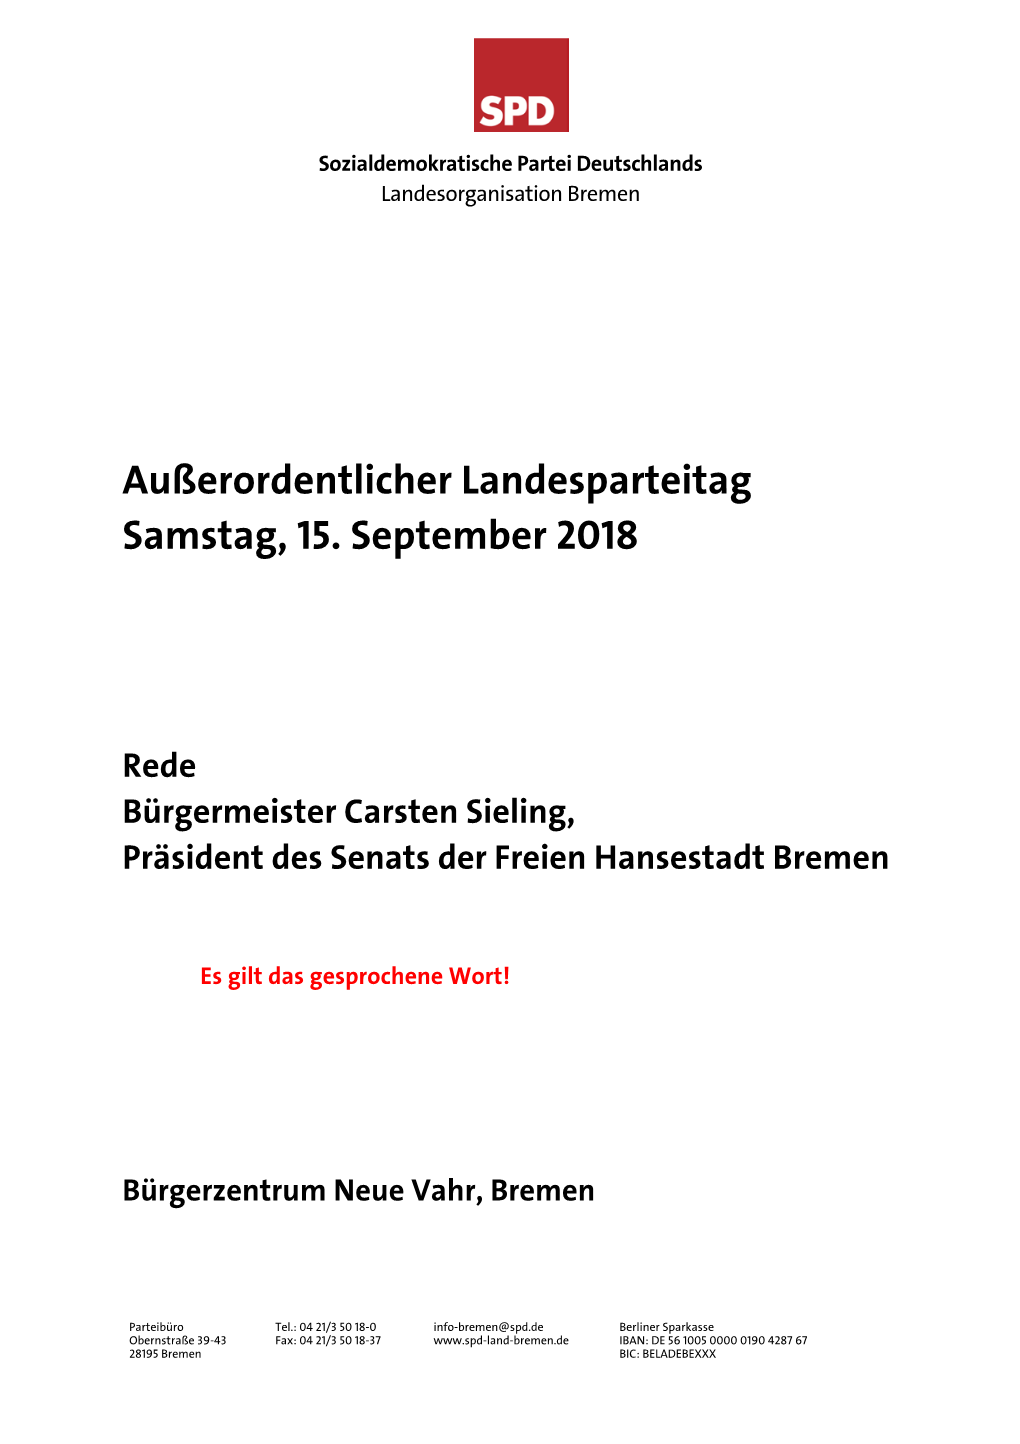 2018-09-15-Rede-Carsten-Sieling